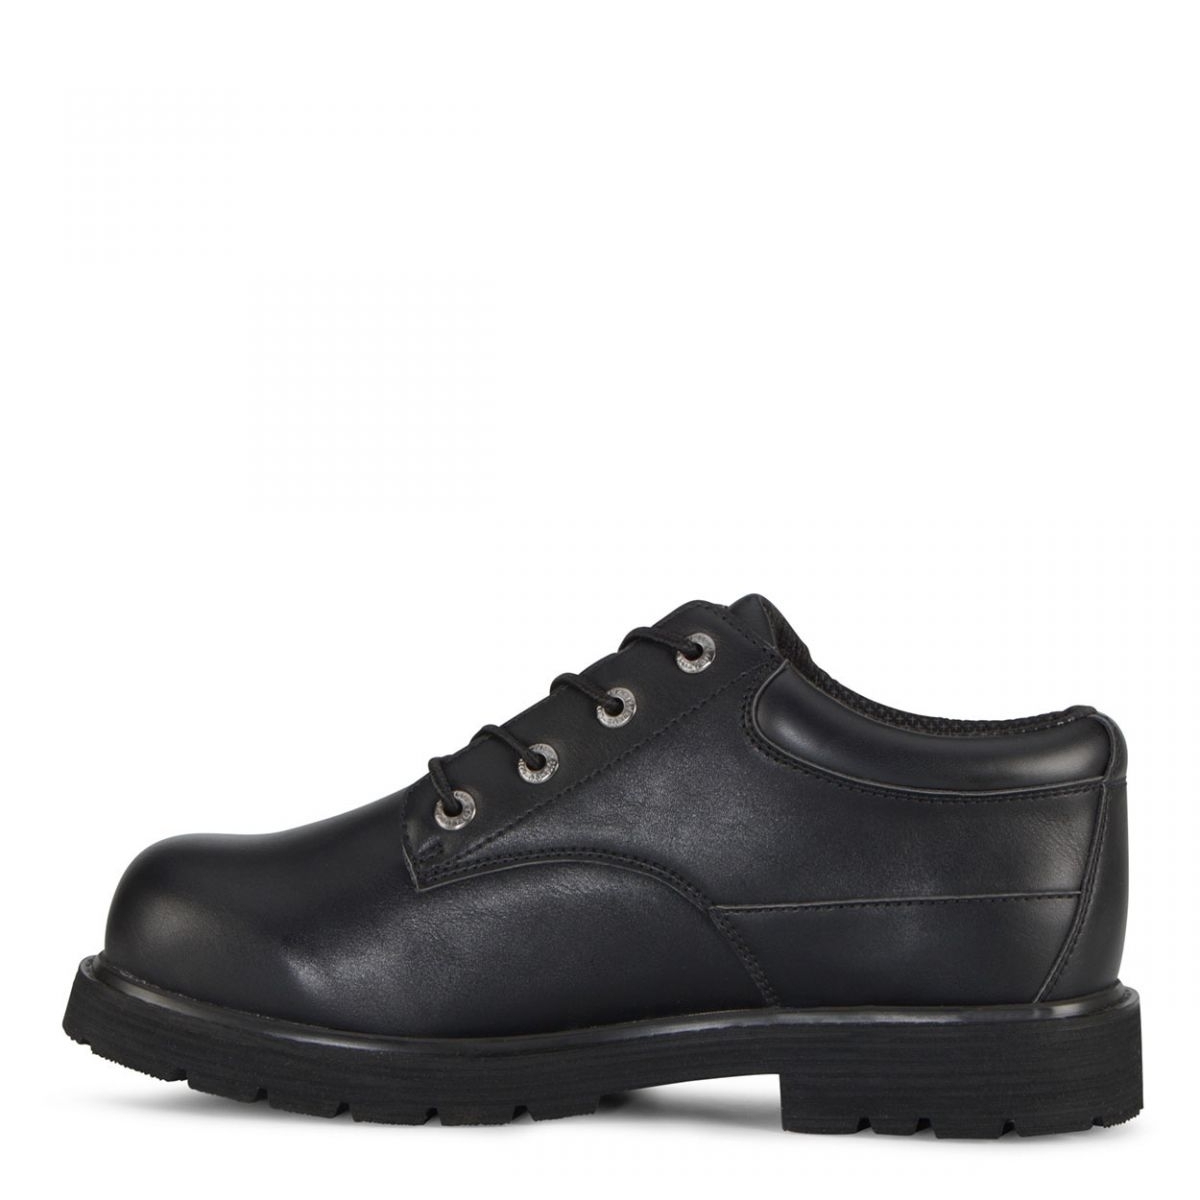 Lugz Men's Drifter Lo Lx Oxford Boot Black - MDRLXLV-001 BLACK - BLACK, 13